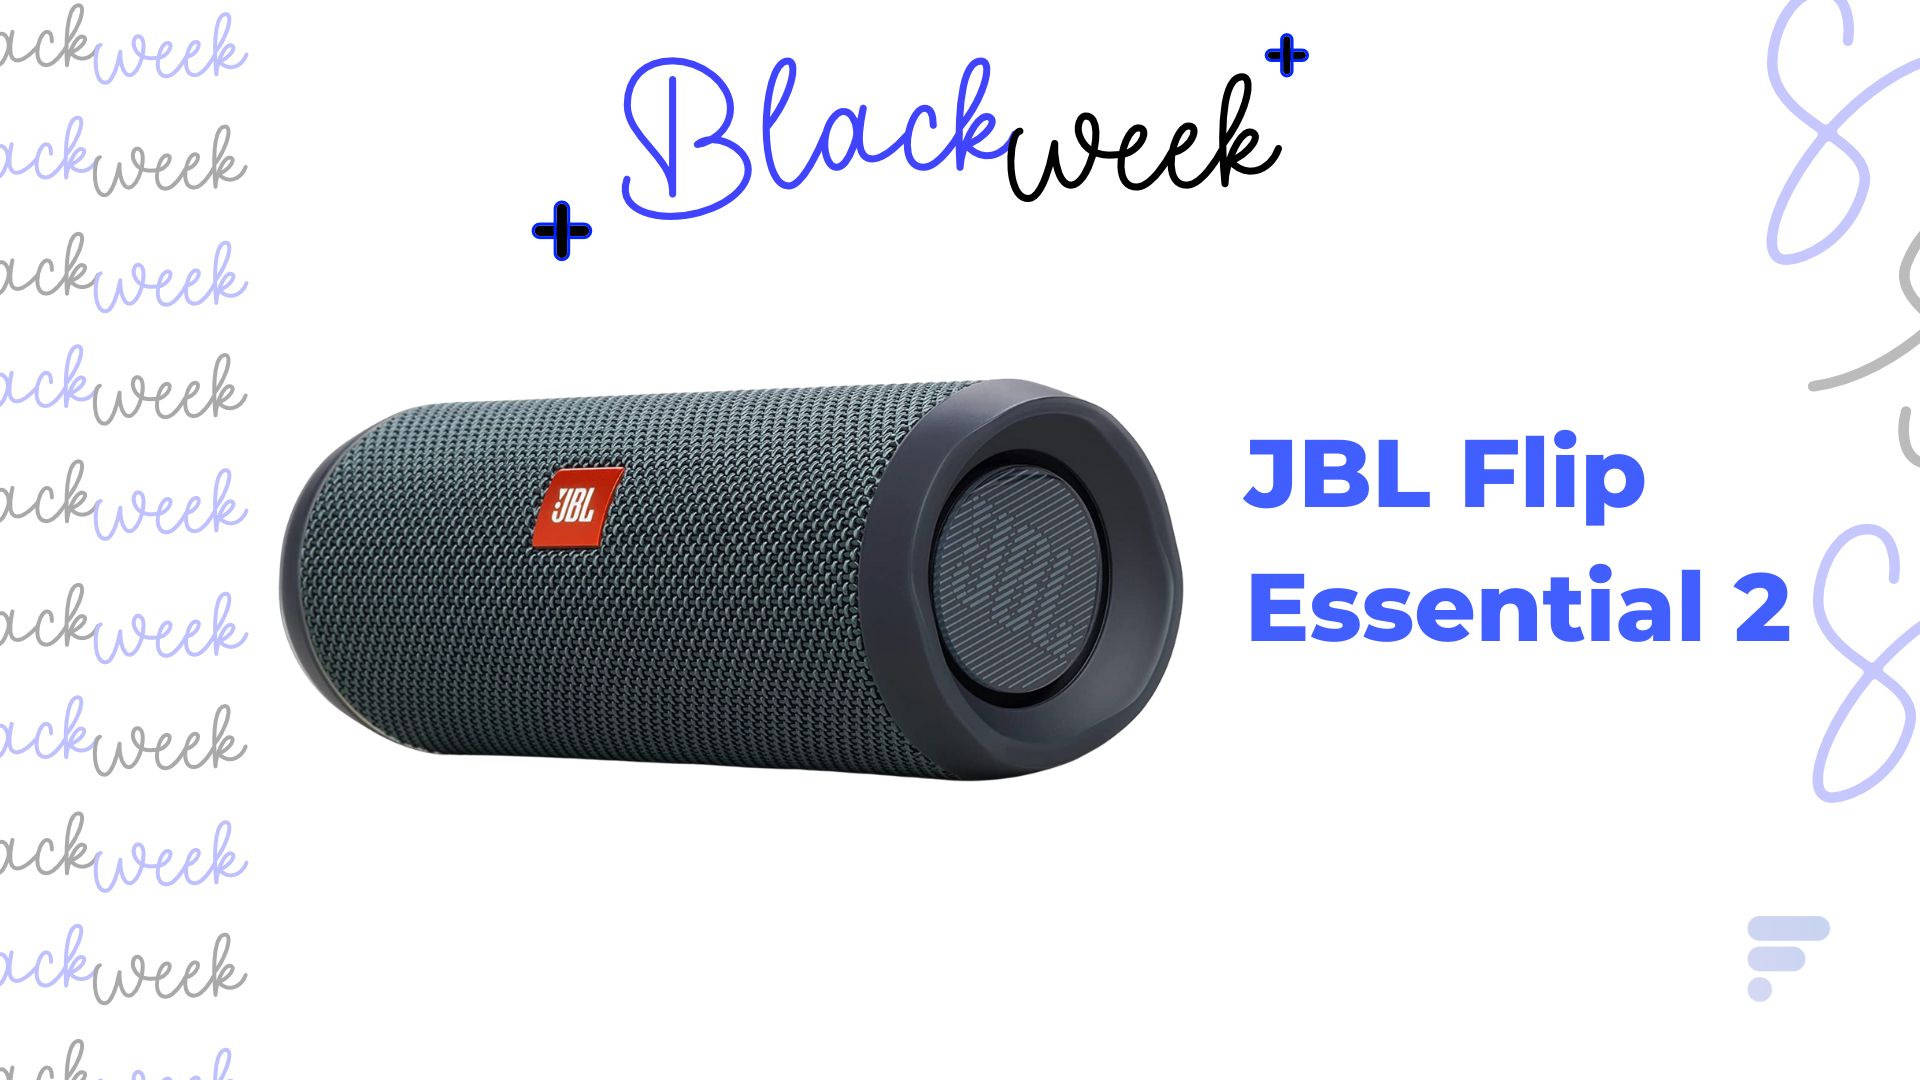 JBL Flip Essential 2 : cette puissante enceinte portable est à -30